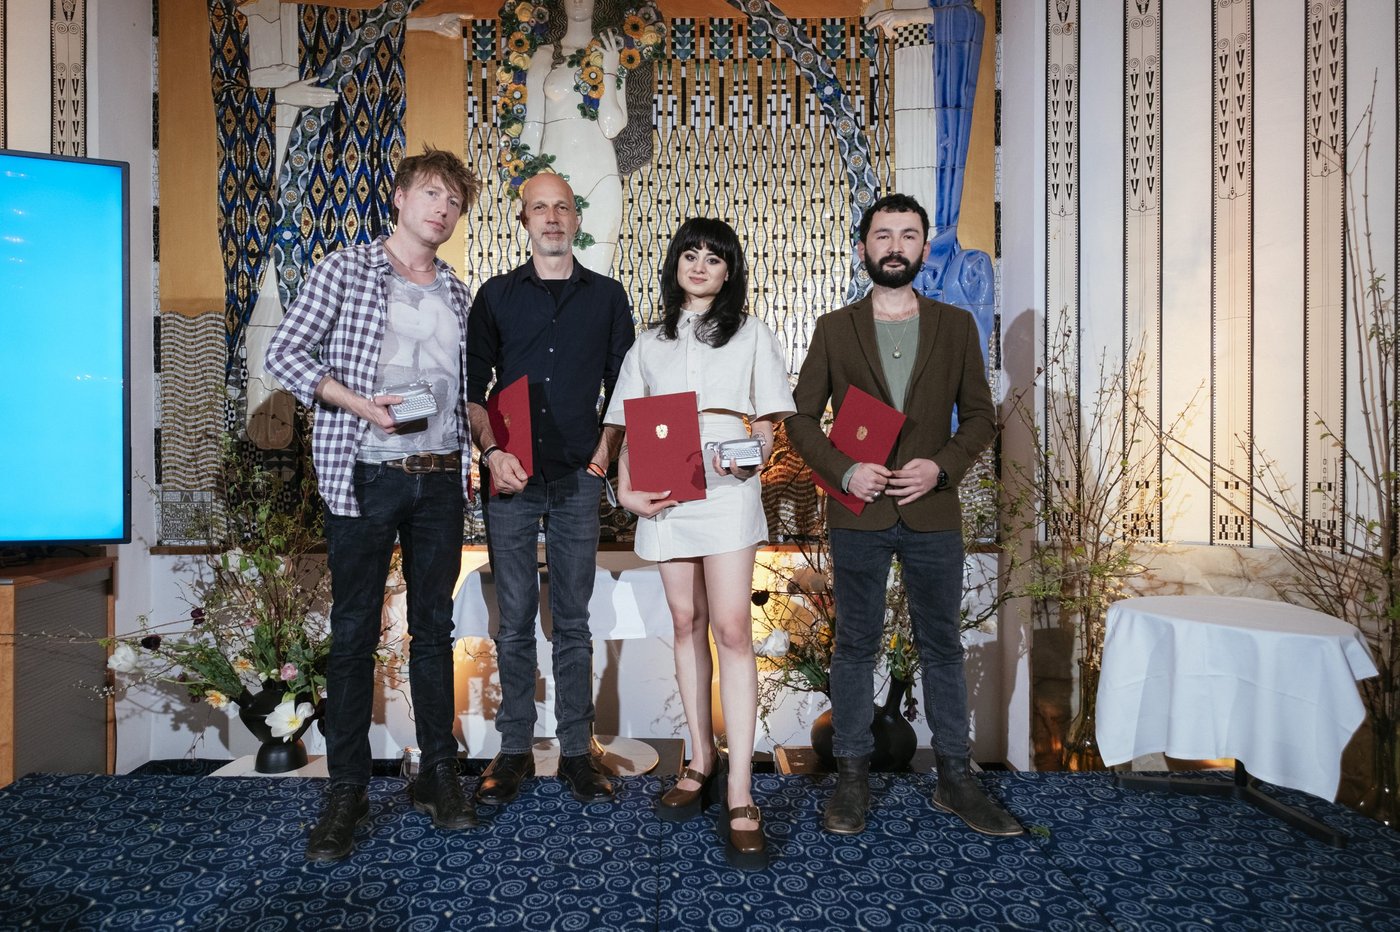 Foto der vier Preisträger_innen, zwei Männer, eine Frau in der Mitte und ein Mann rechts von ihr, alle halten eine rote Urkunde in ihren Händen, sie stehen nebeneinander vor einem Klimt Wandbild auf einem dunkelblauem Teppichboden